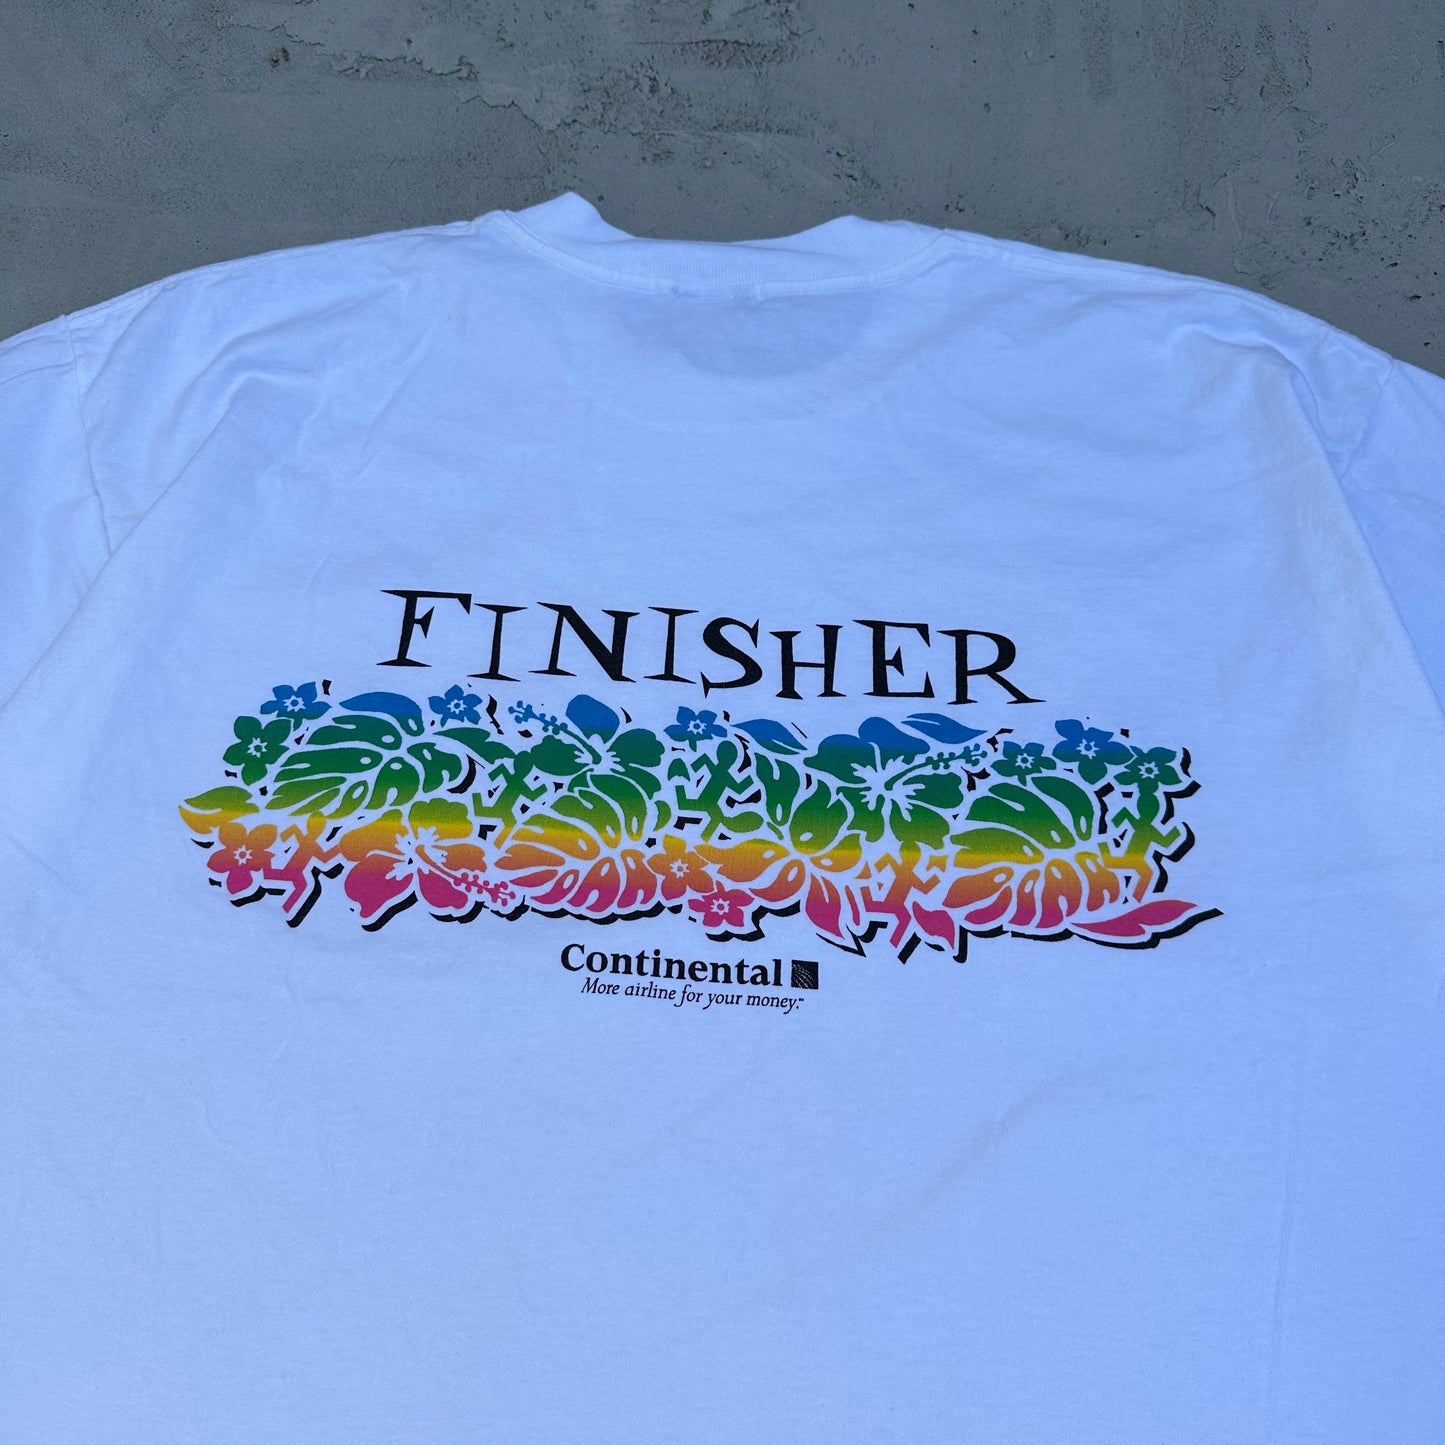 Vintage Great Aloha Run Hawaii 1998 Rainbow T Shirt - XL